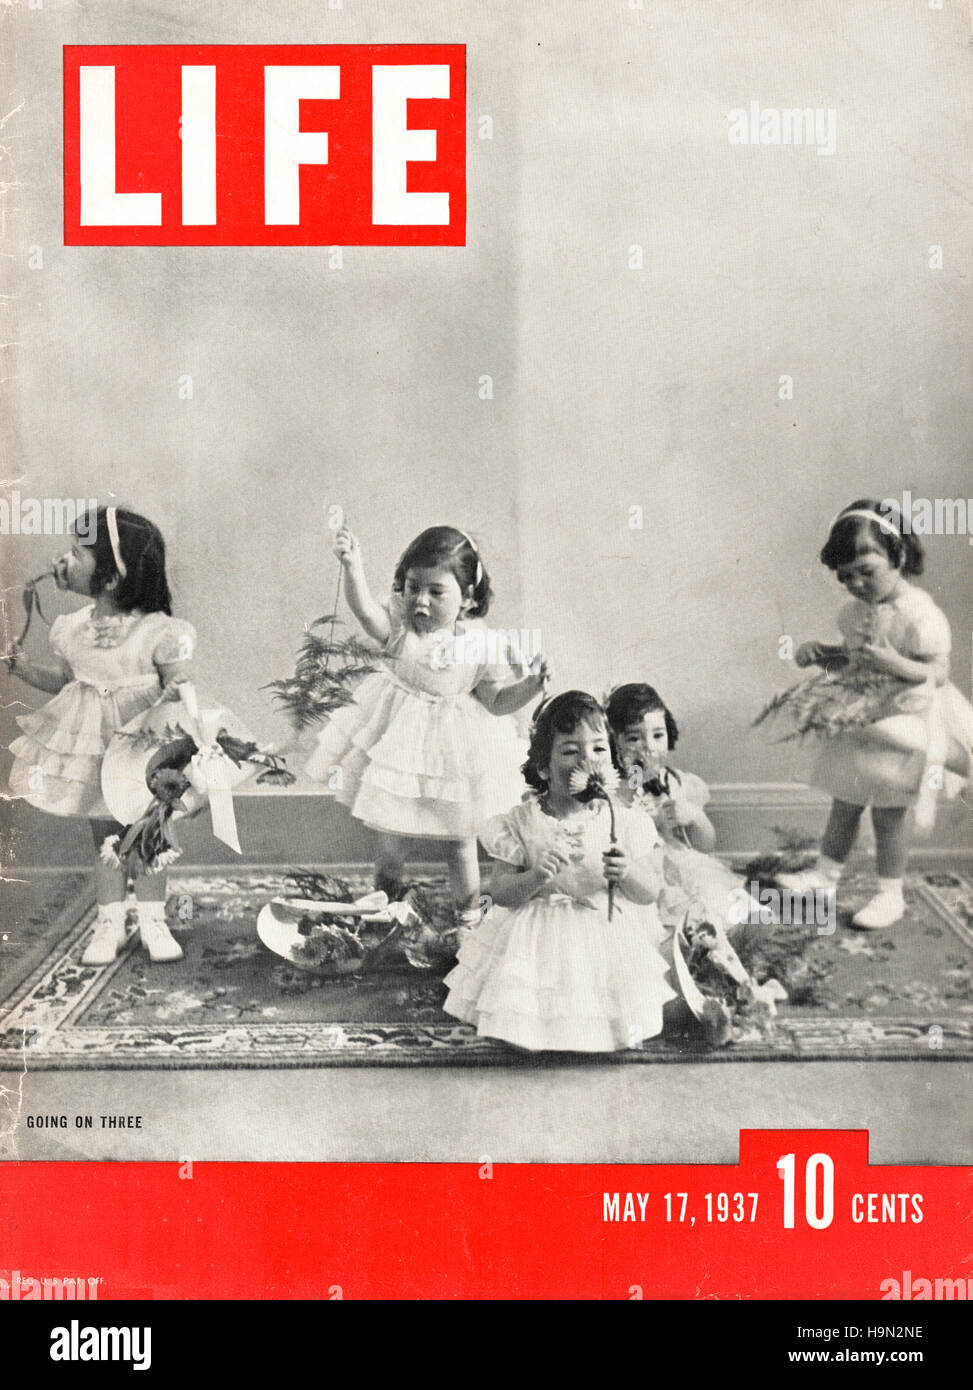 Life magazine fotografías e imágenes de alta resolución - Alamy